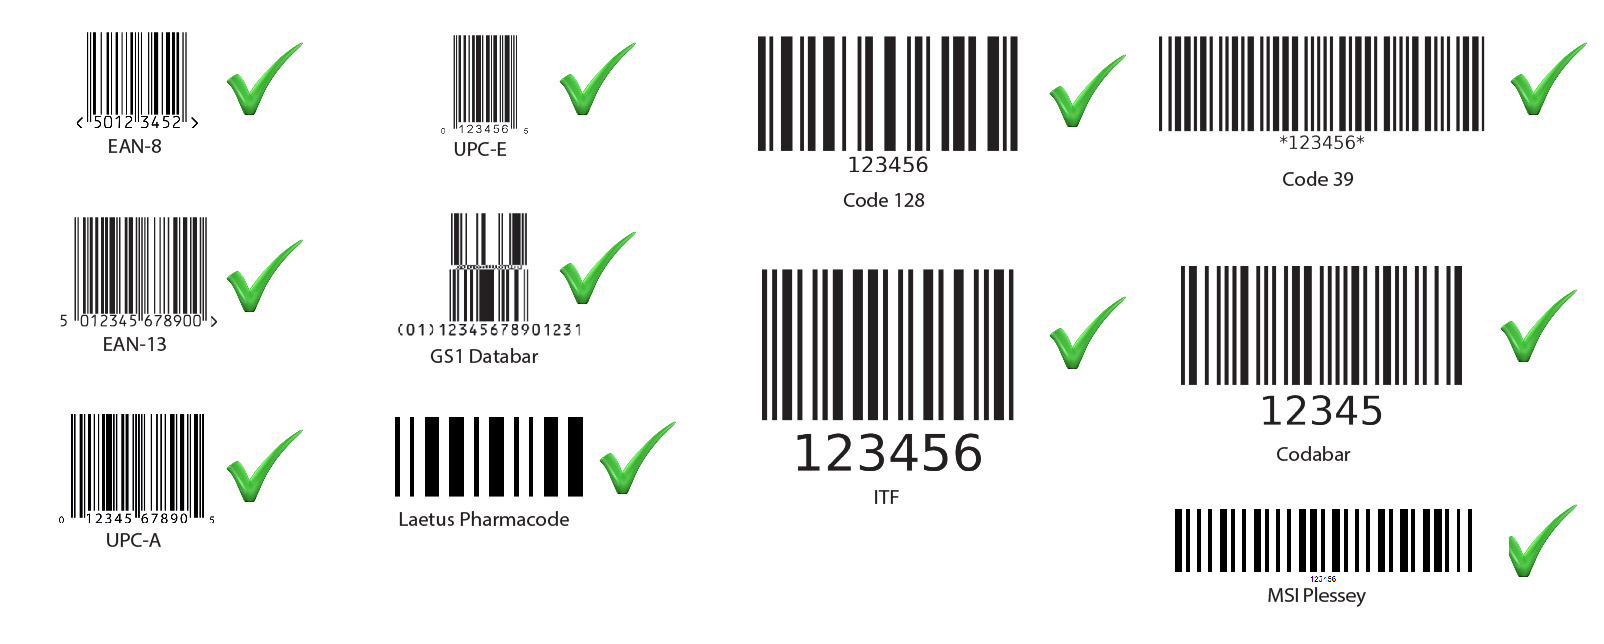 Barcode Verifier Axicon 6015